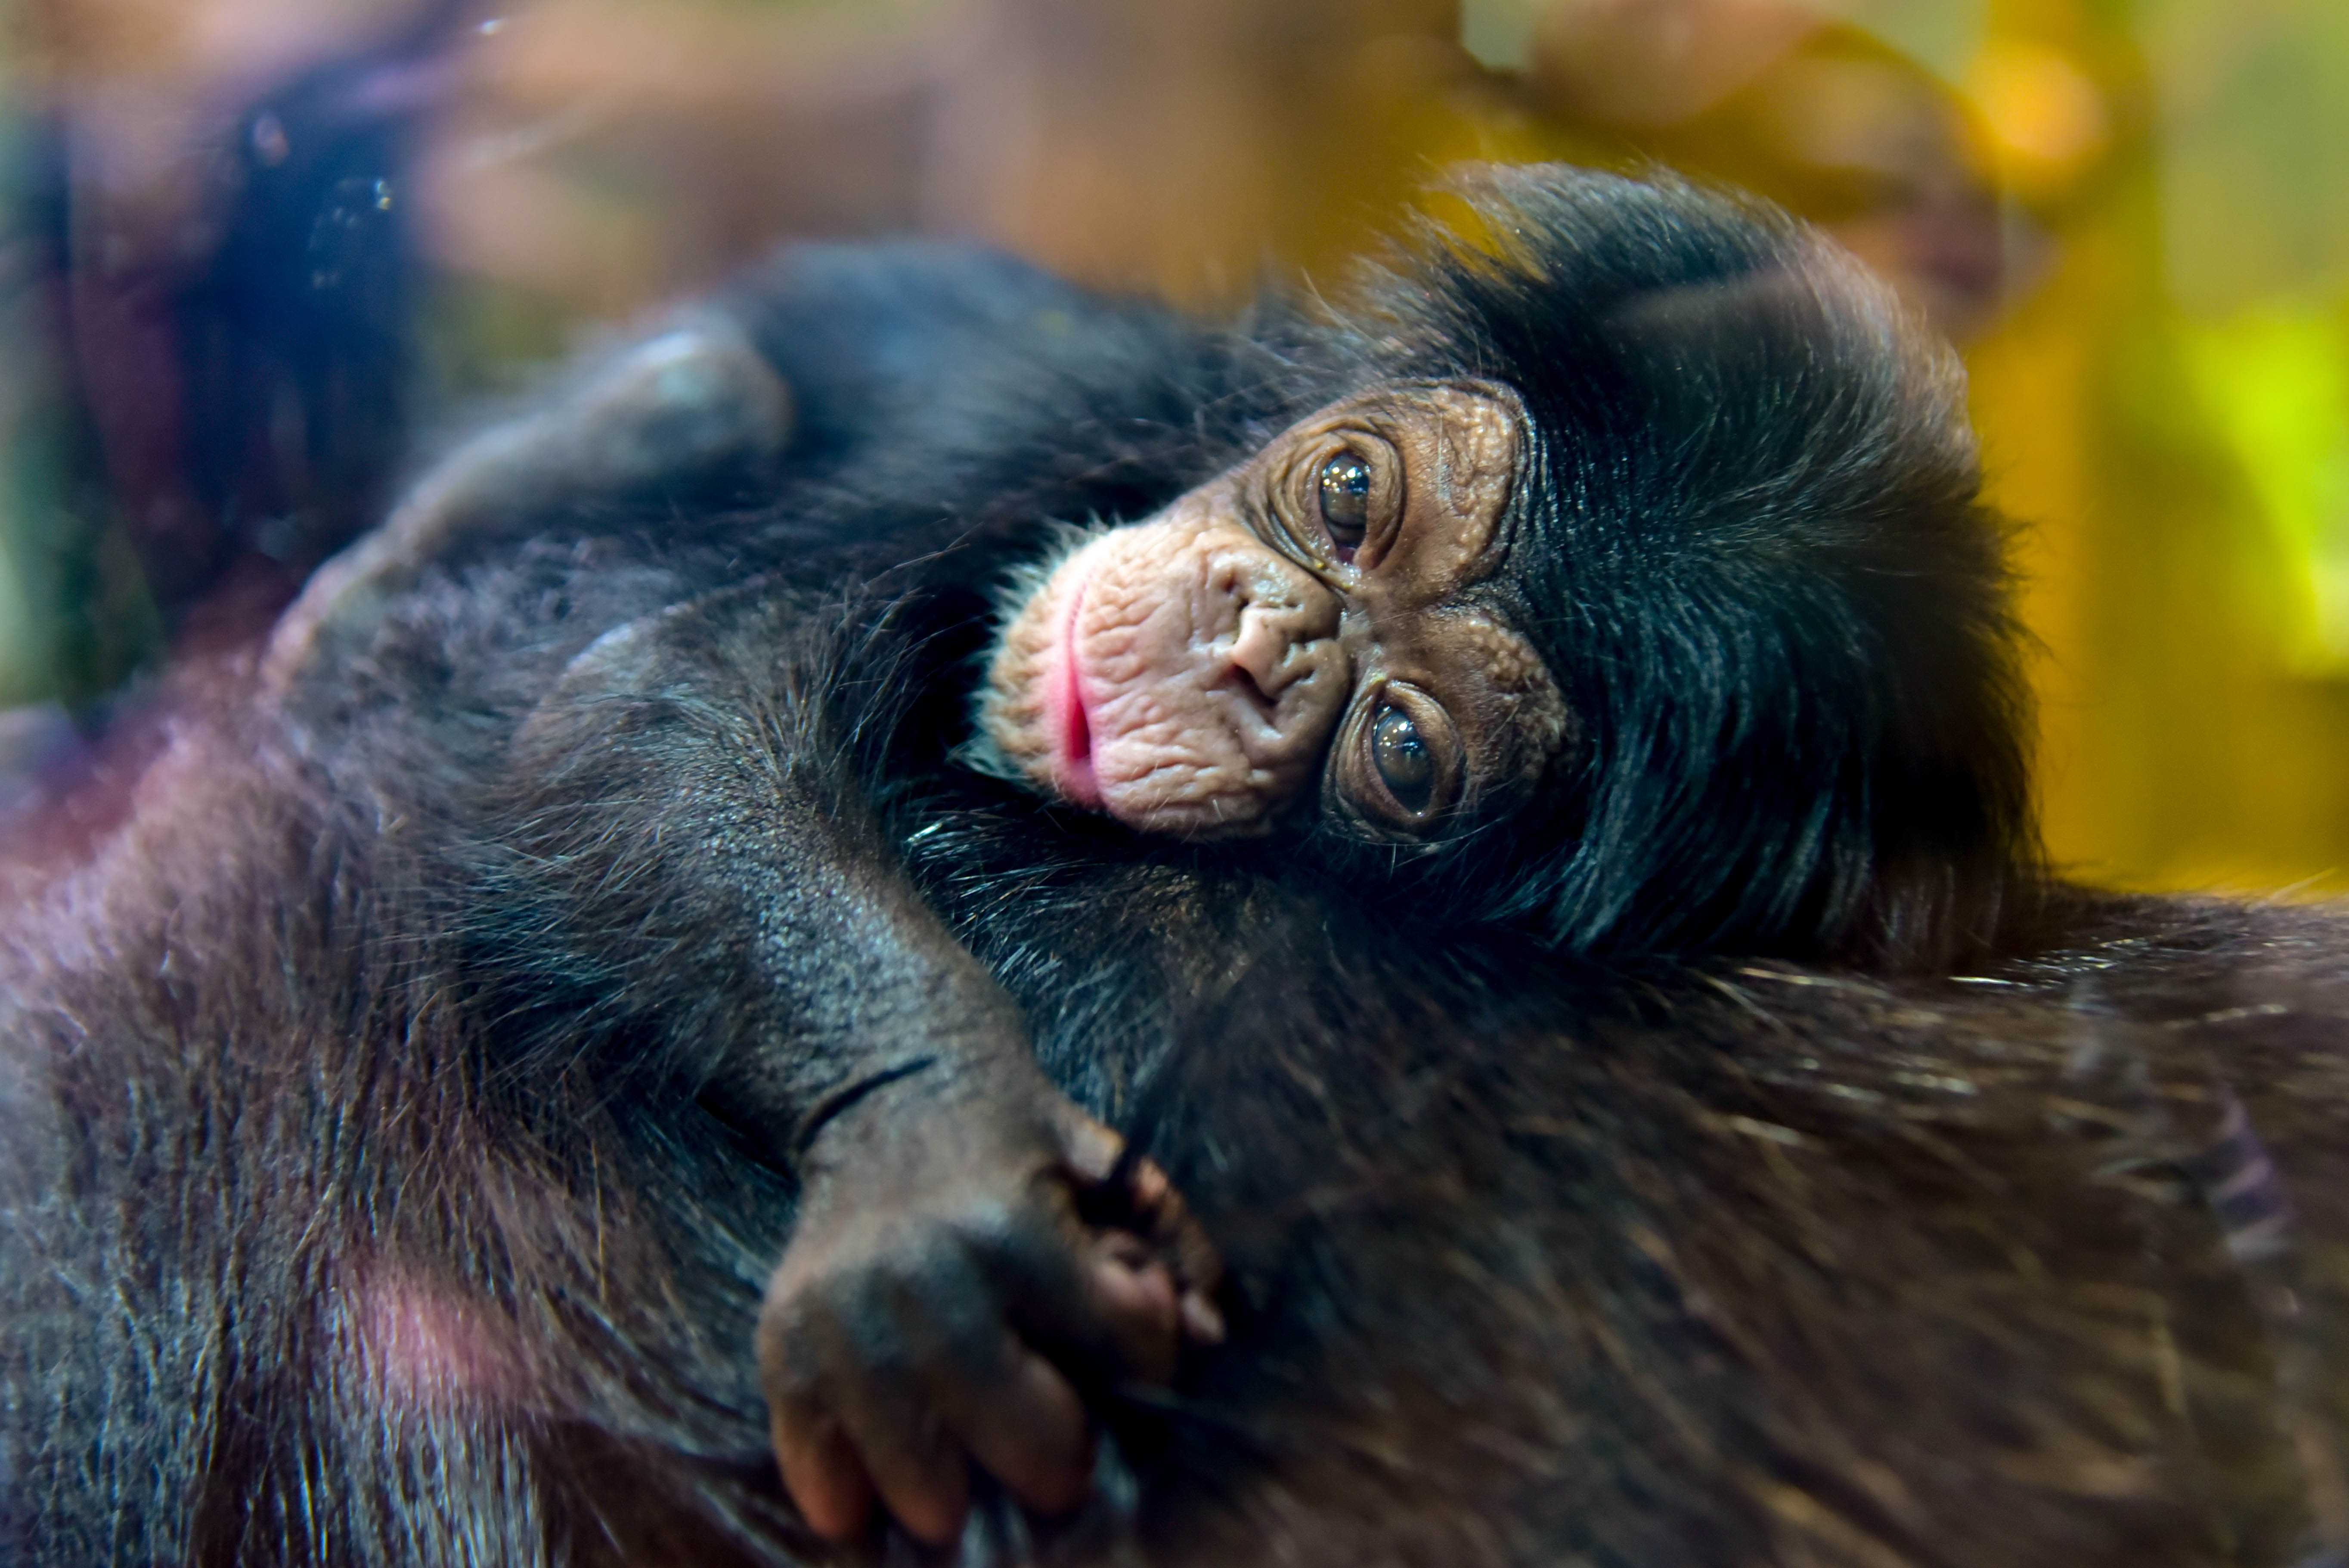 newborn chimpanzee baby